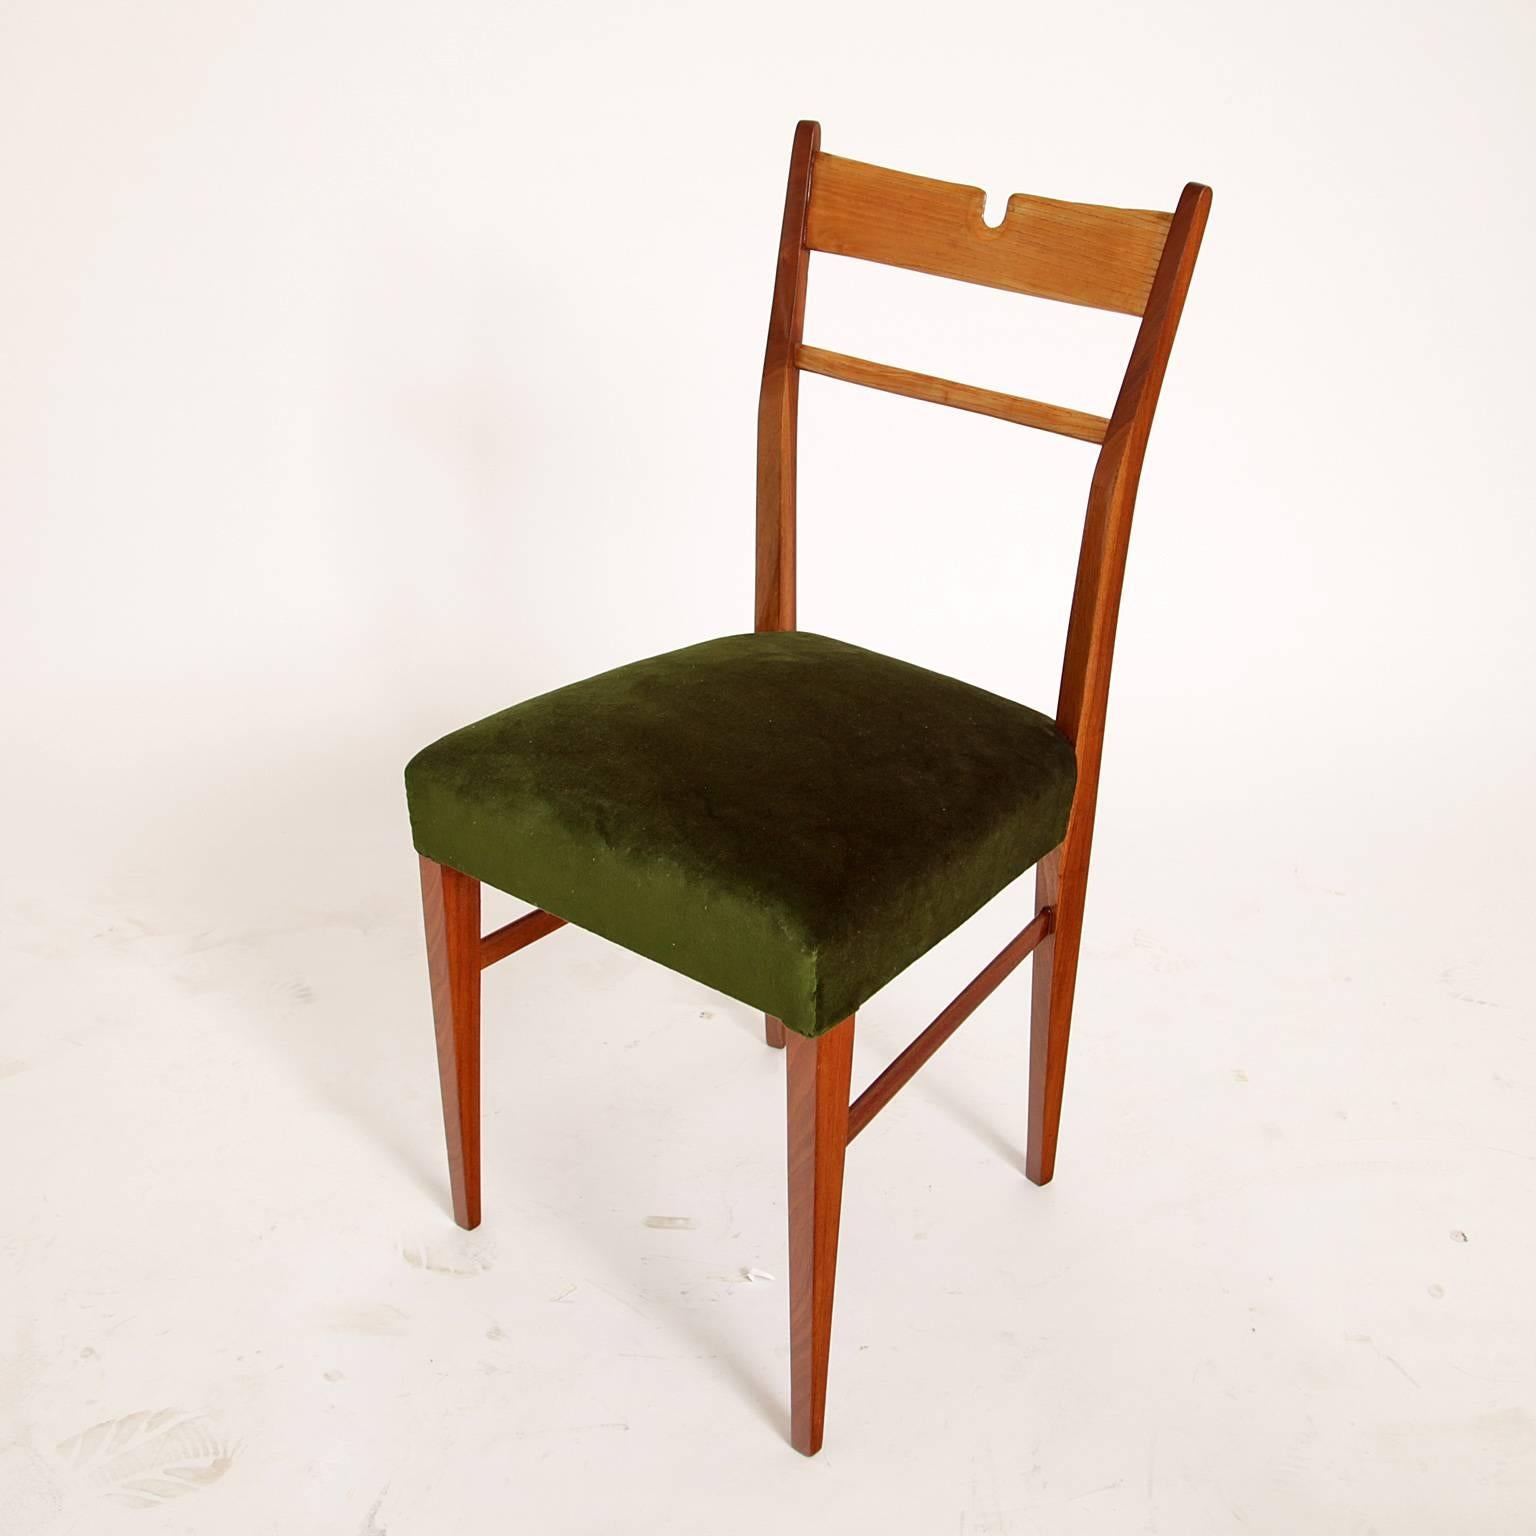 Vier Stühle auf konisch zulaufenden Beinen. Die Rückenlehne hat eine kleine Verstrebung und einen u-förmigen Ausschnitt. Die Stühle sind neu gepolstert mit einem grünen, hochwertigen Samtstoff.